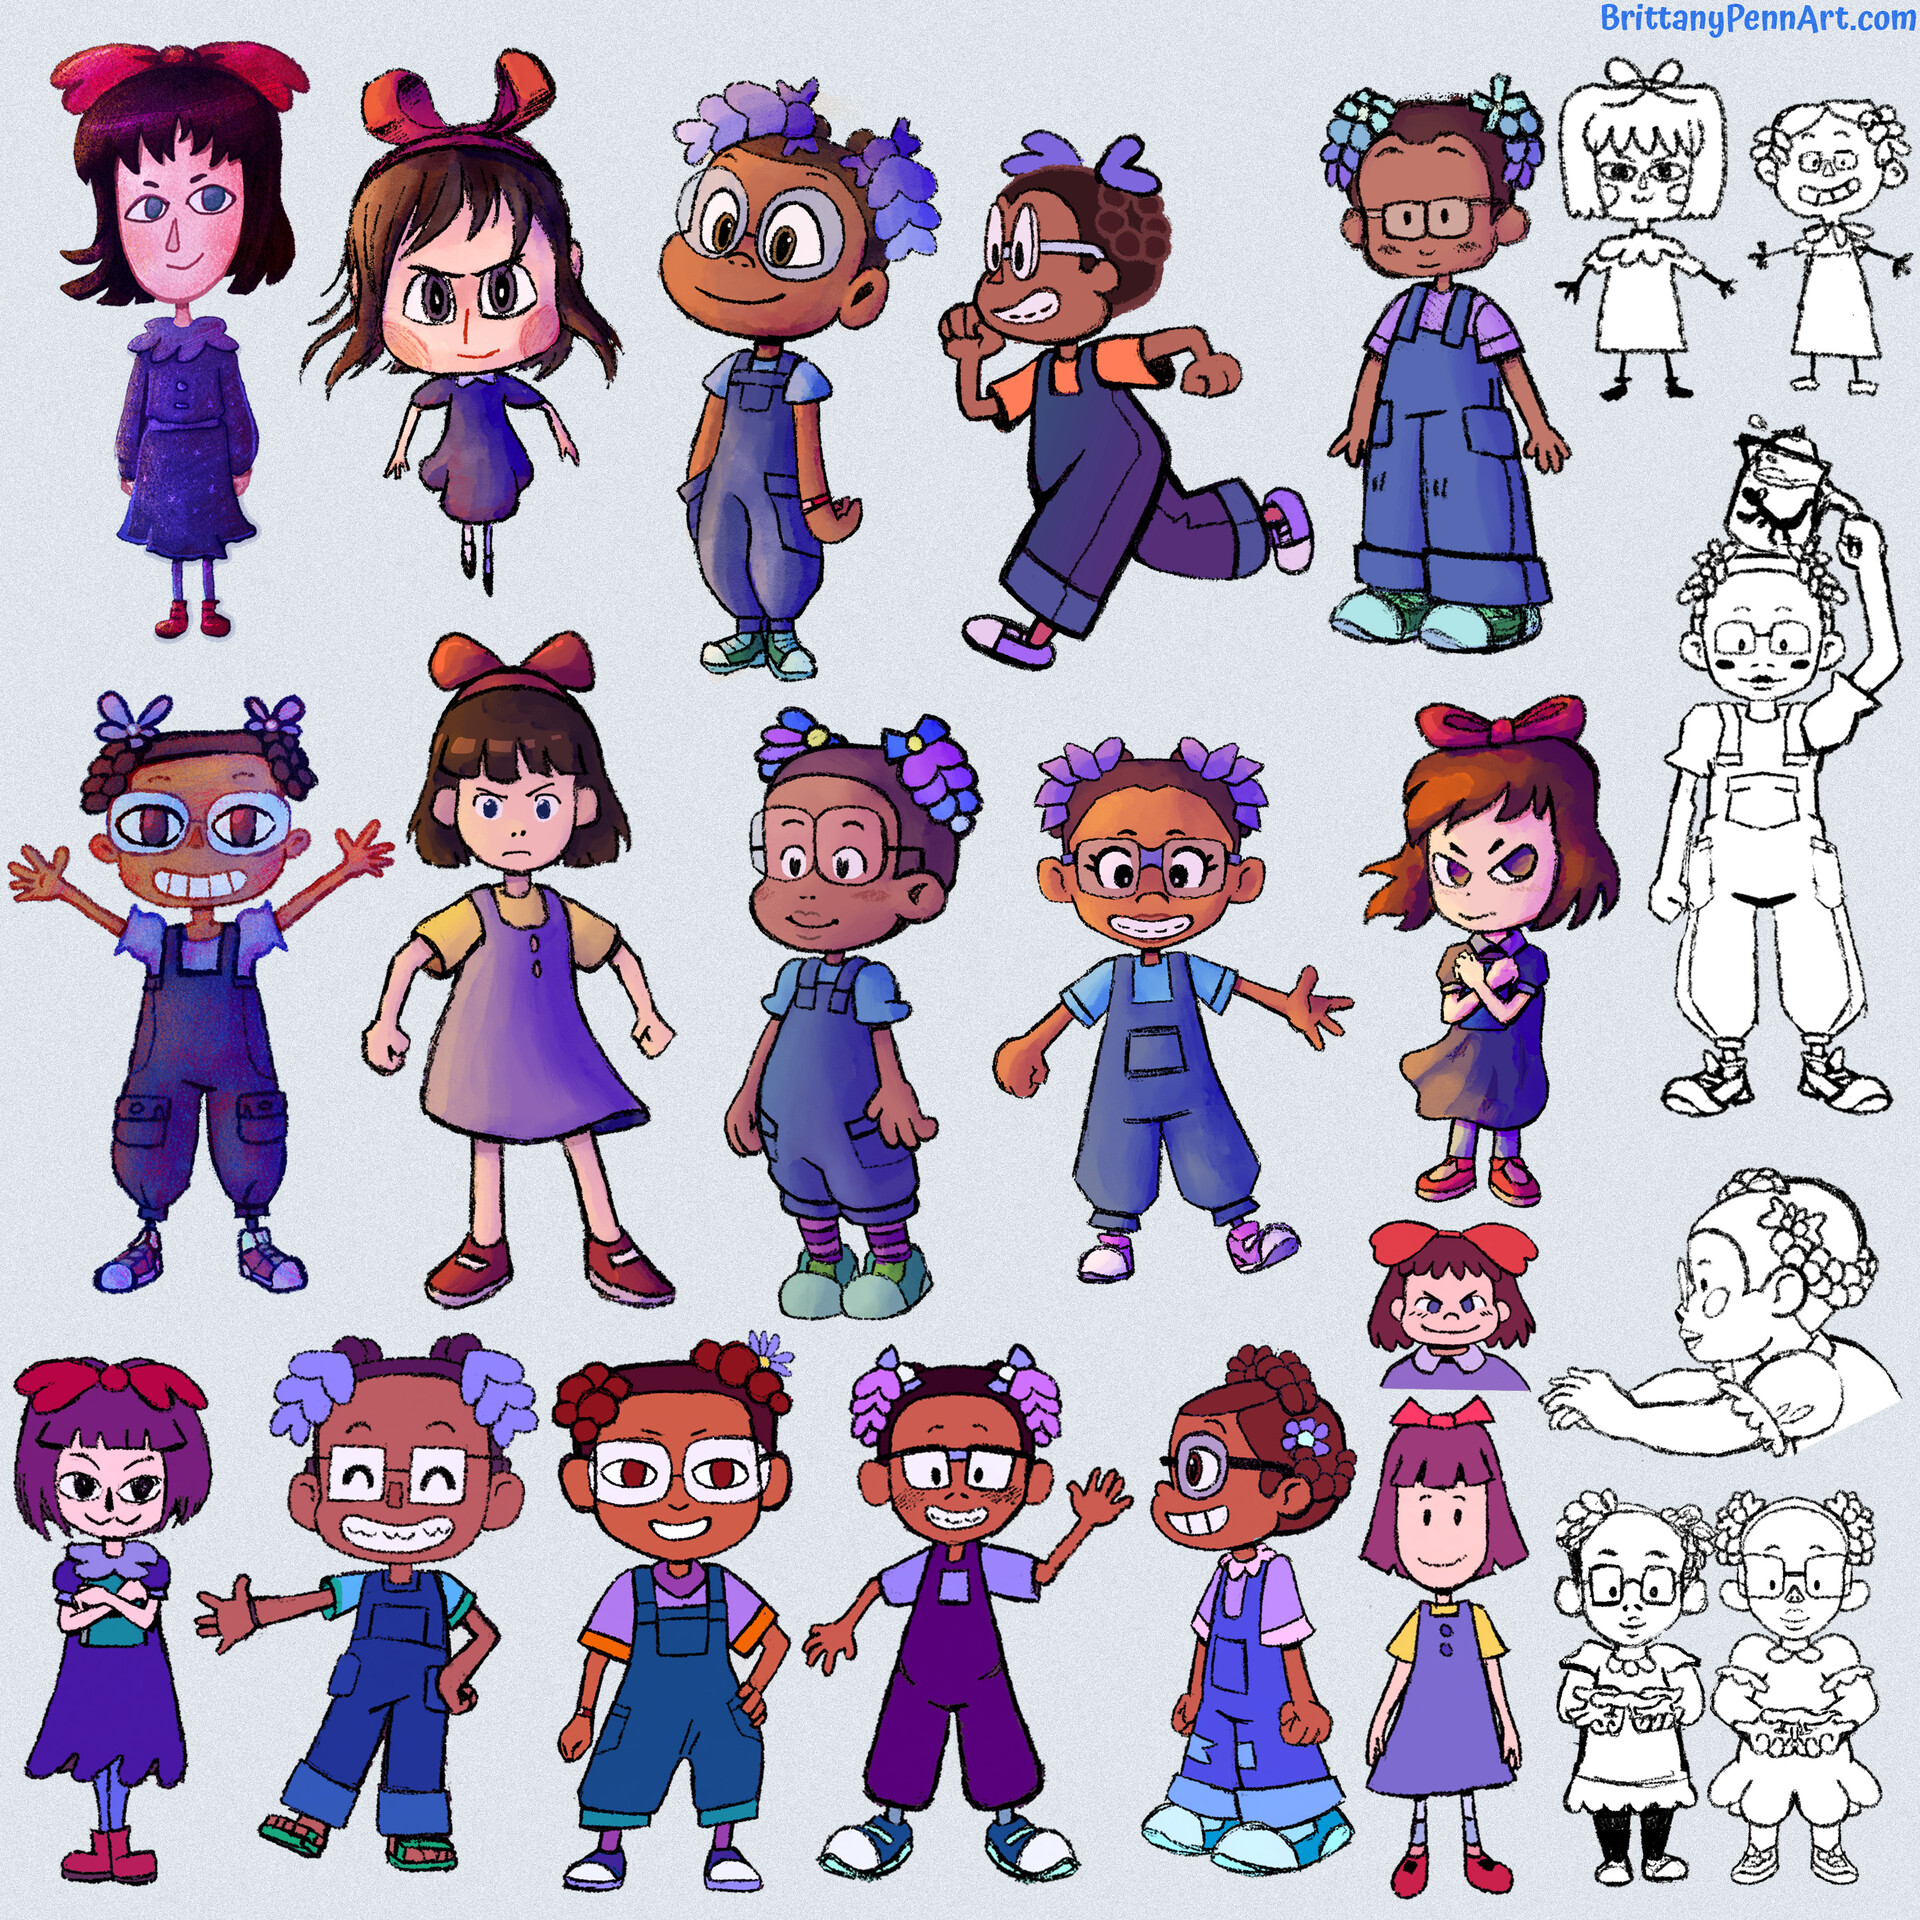 ArtStation - Matilda & Lavender Character Design Sketches